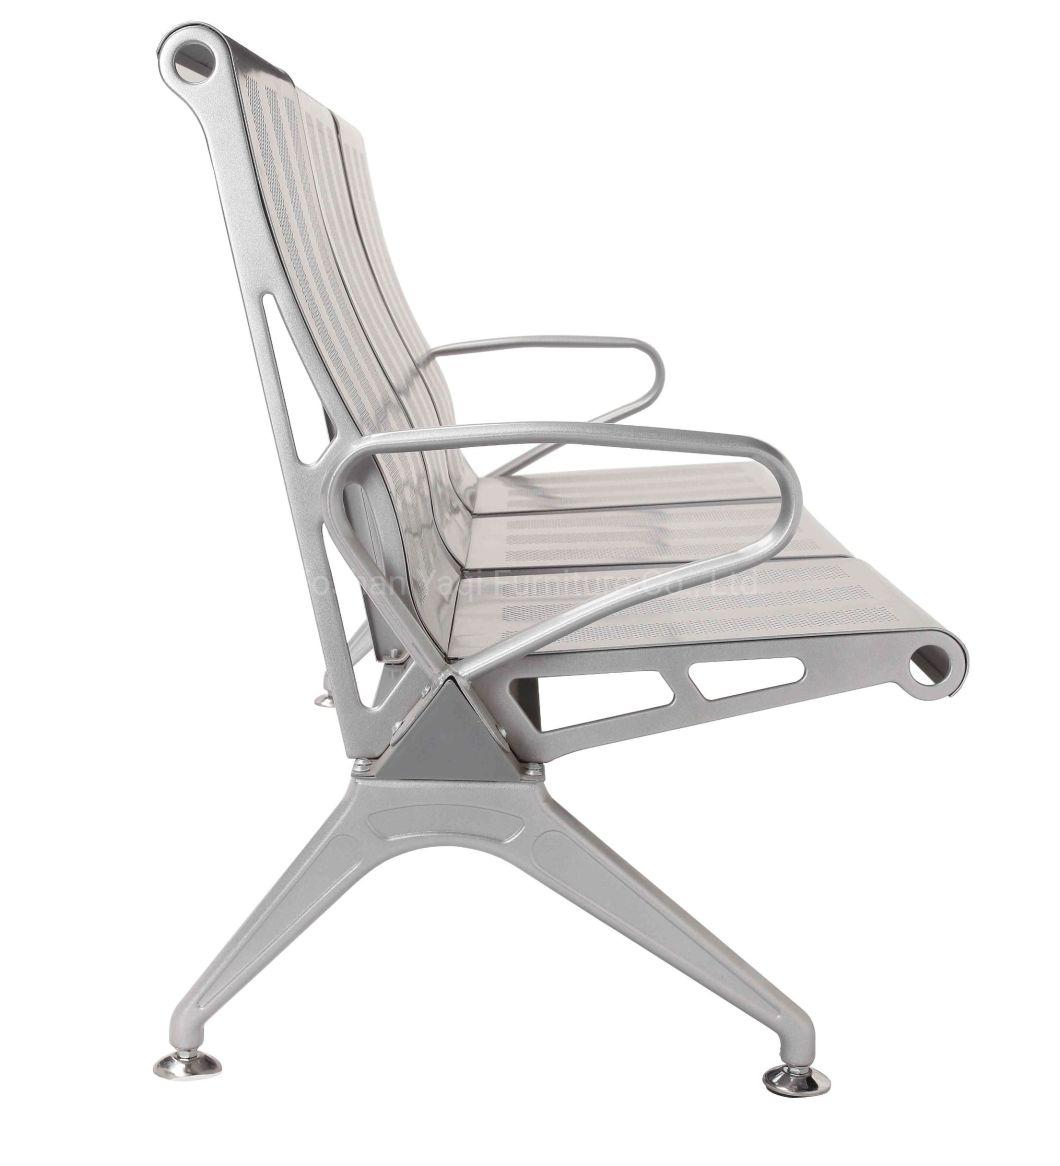 High Back Airport Chair Public Hospital Waiting Chair (YA-J108)